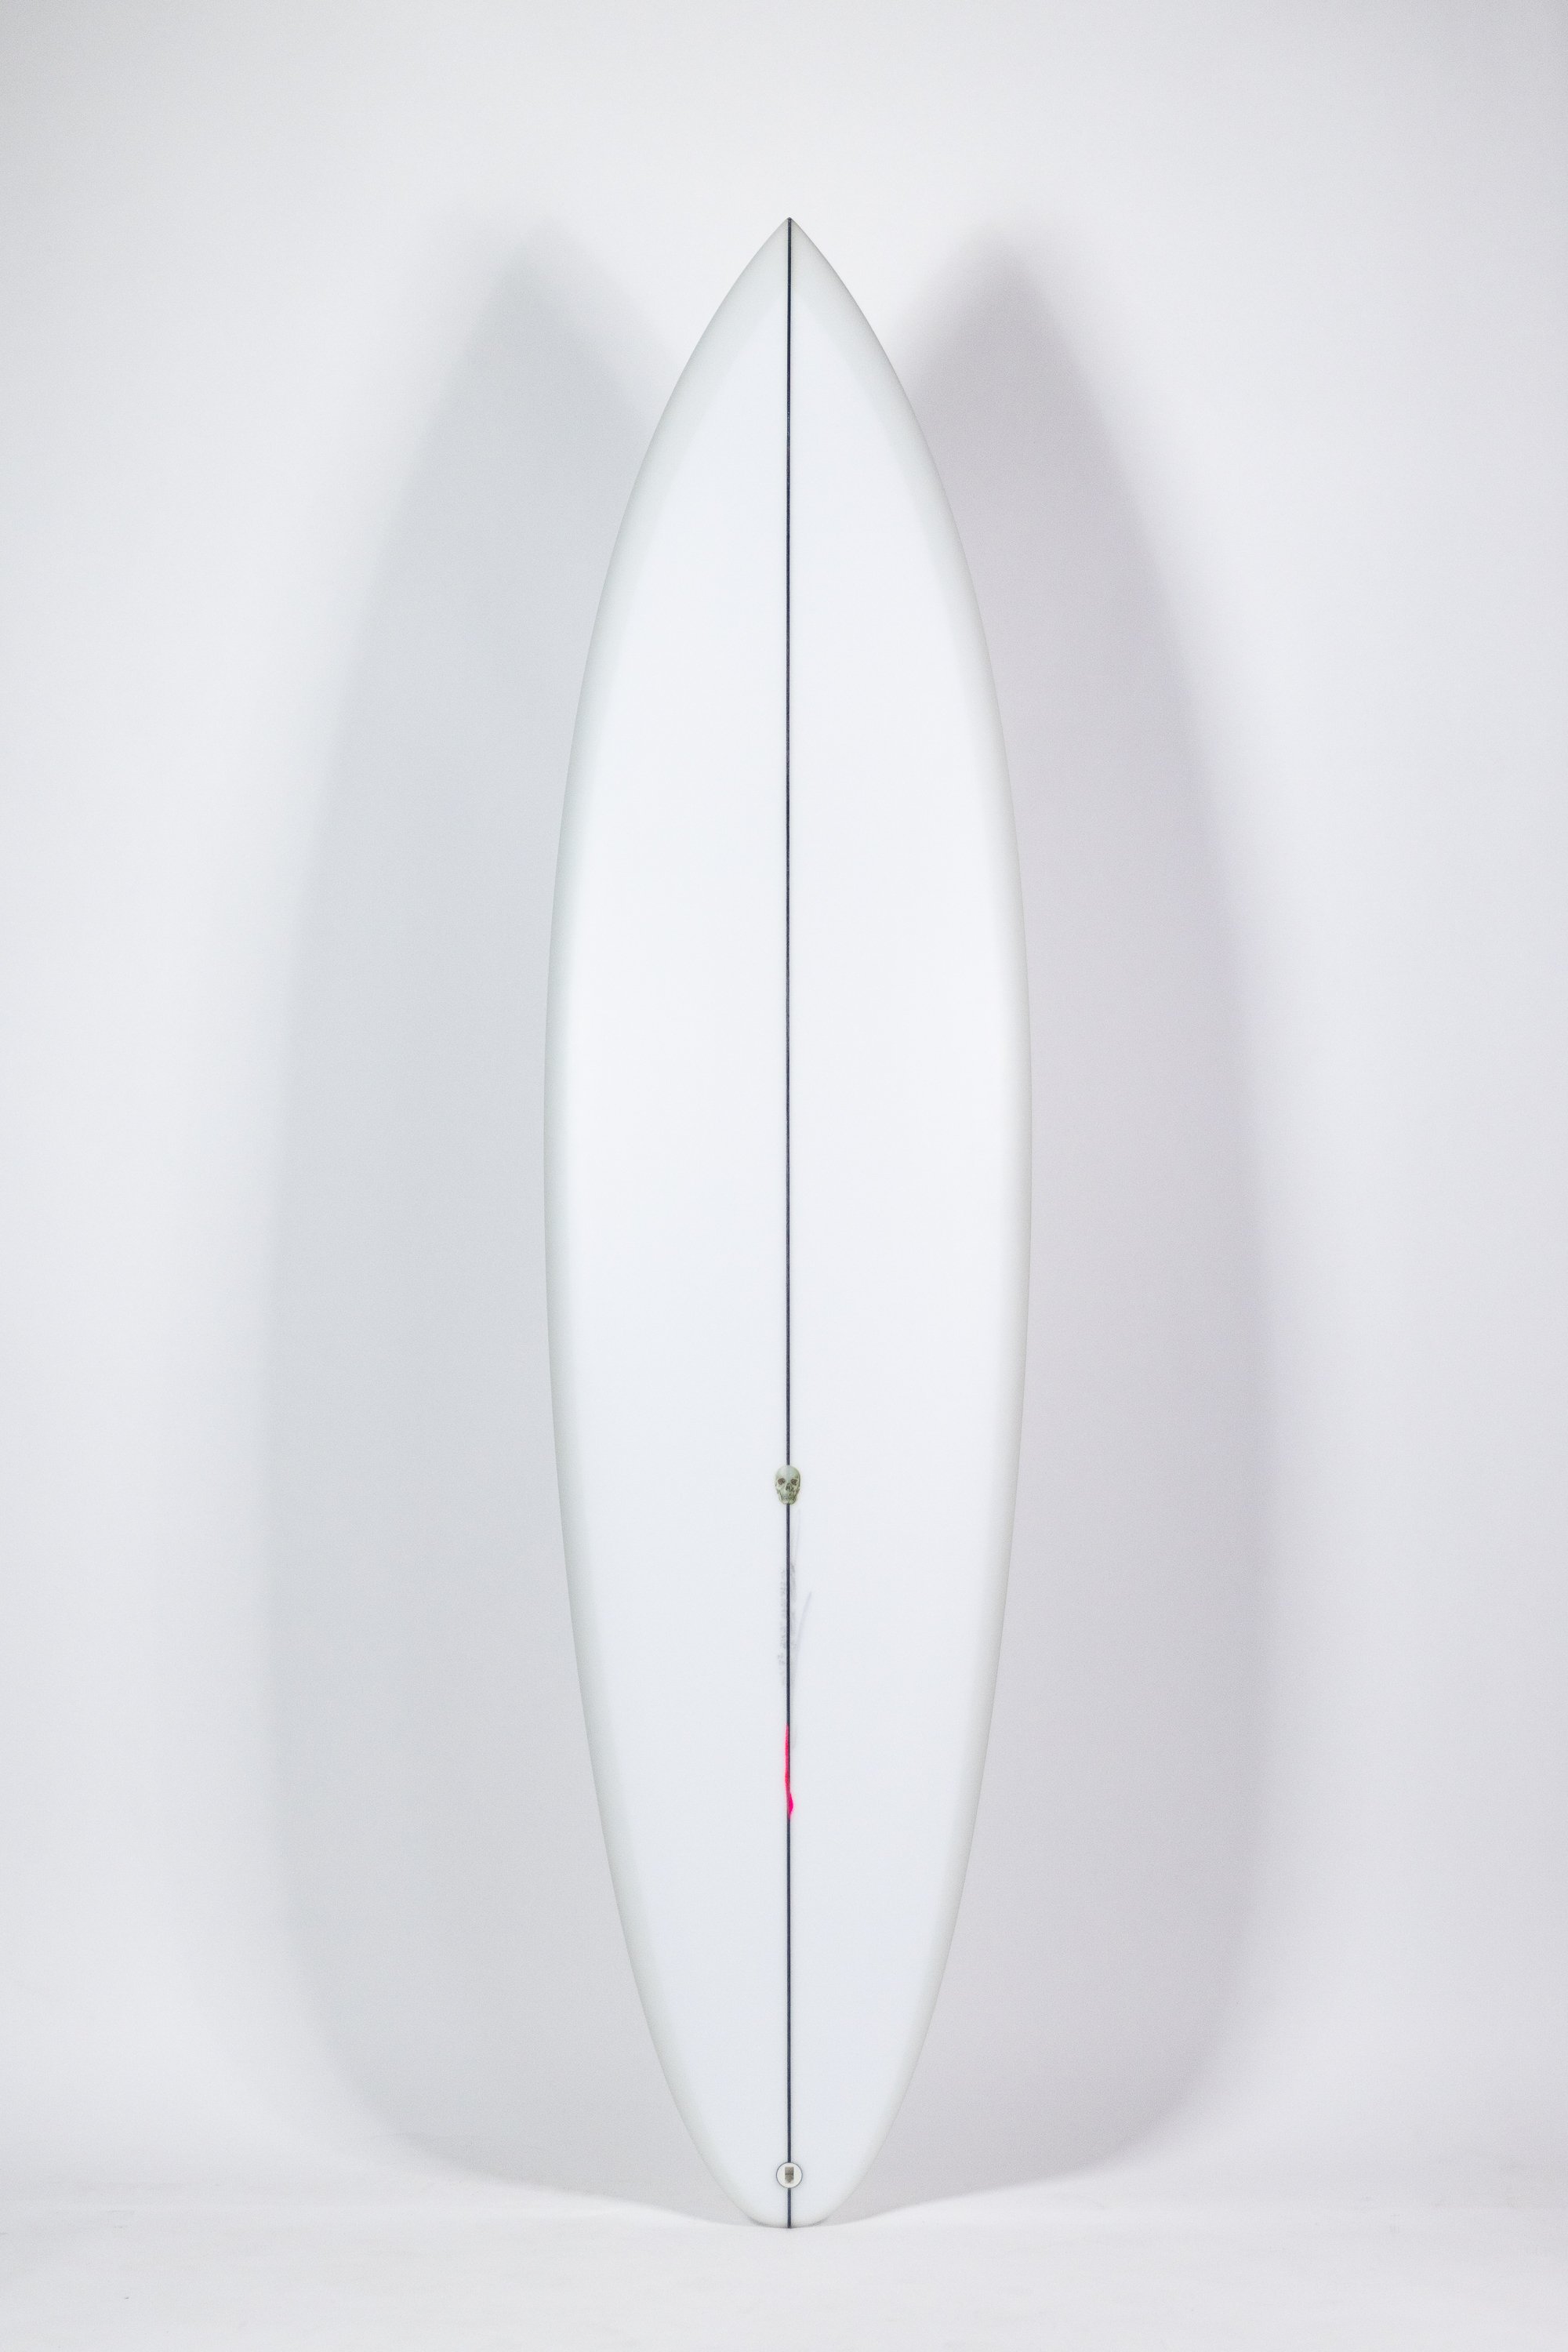 2023-Christenson Surfboards-29.jpg